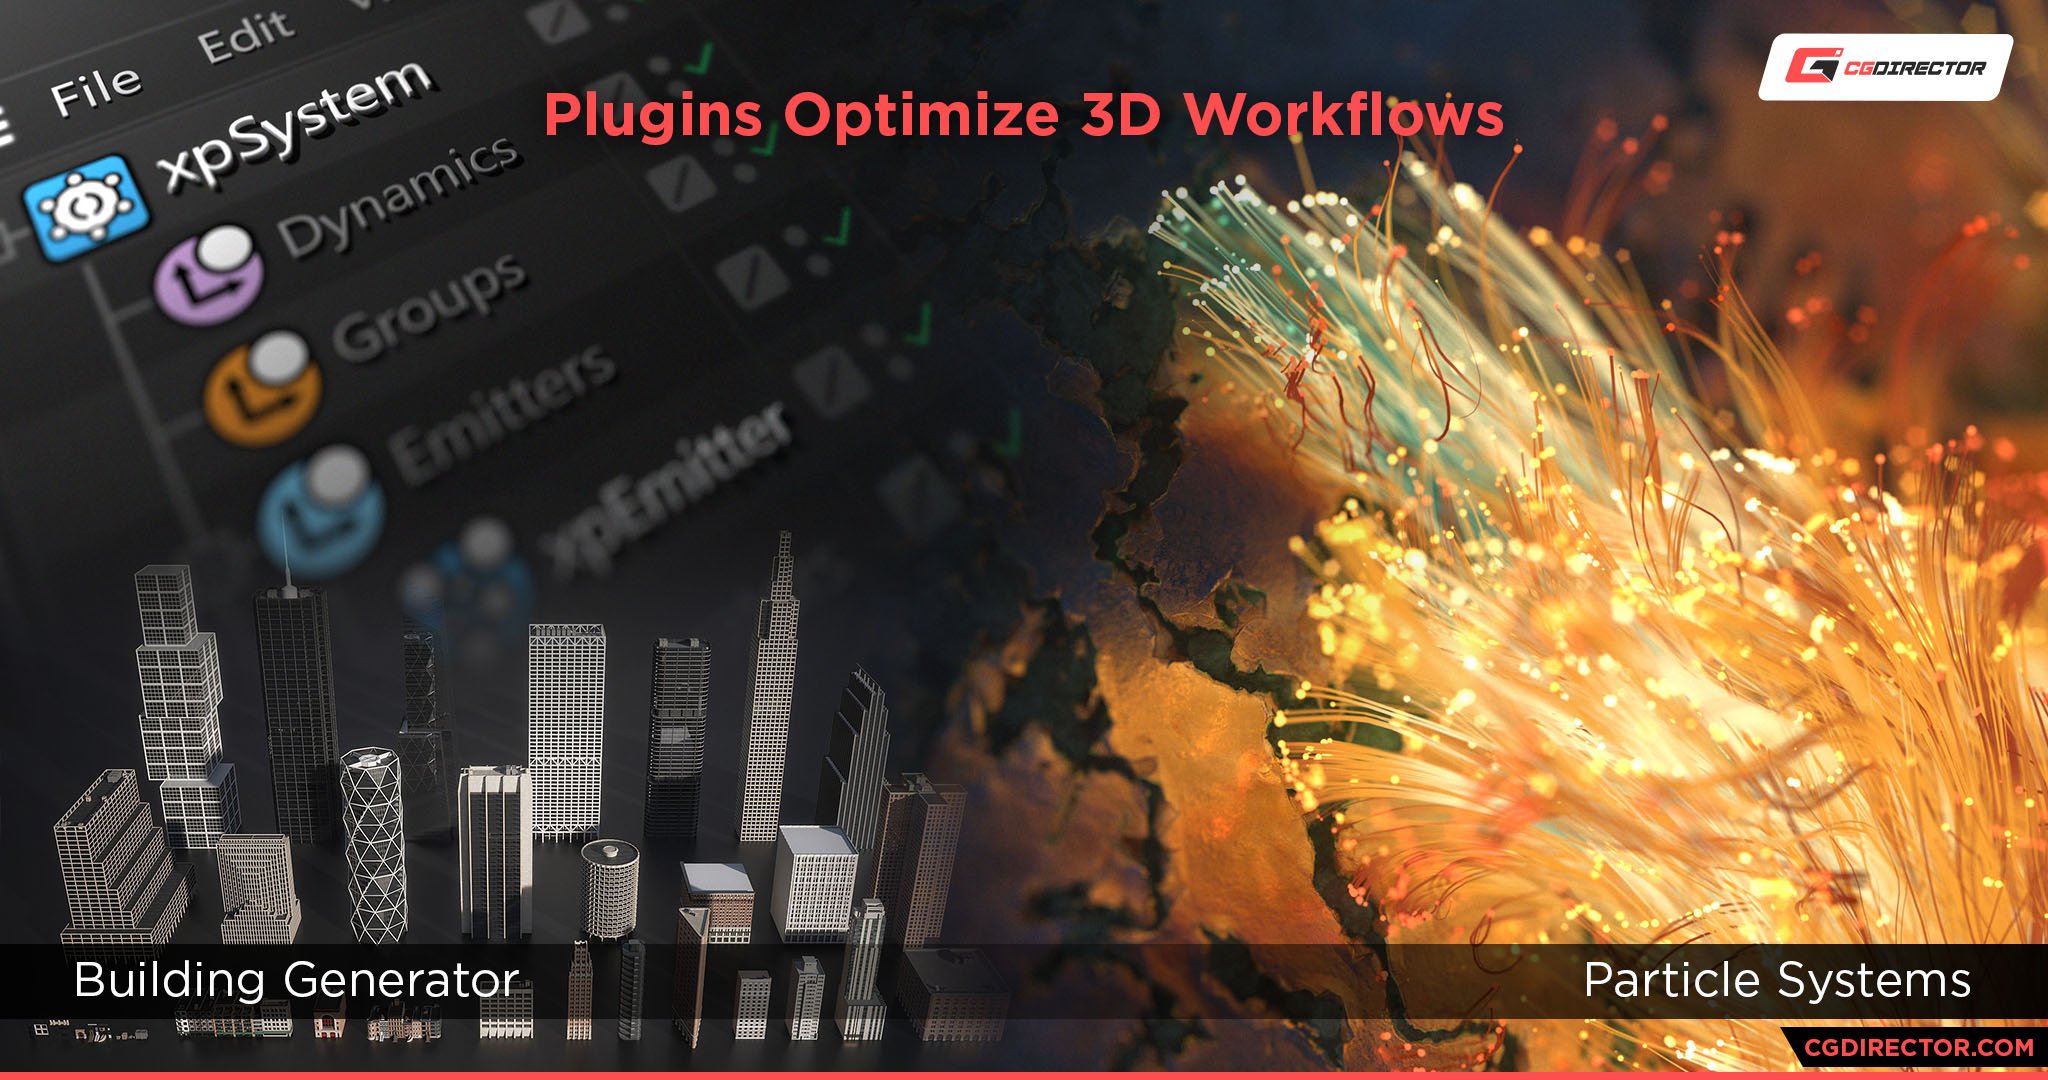 Plugins Speed up 3D workflows